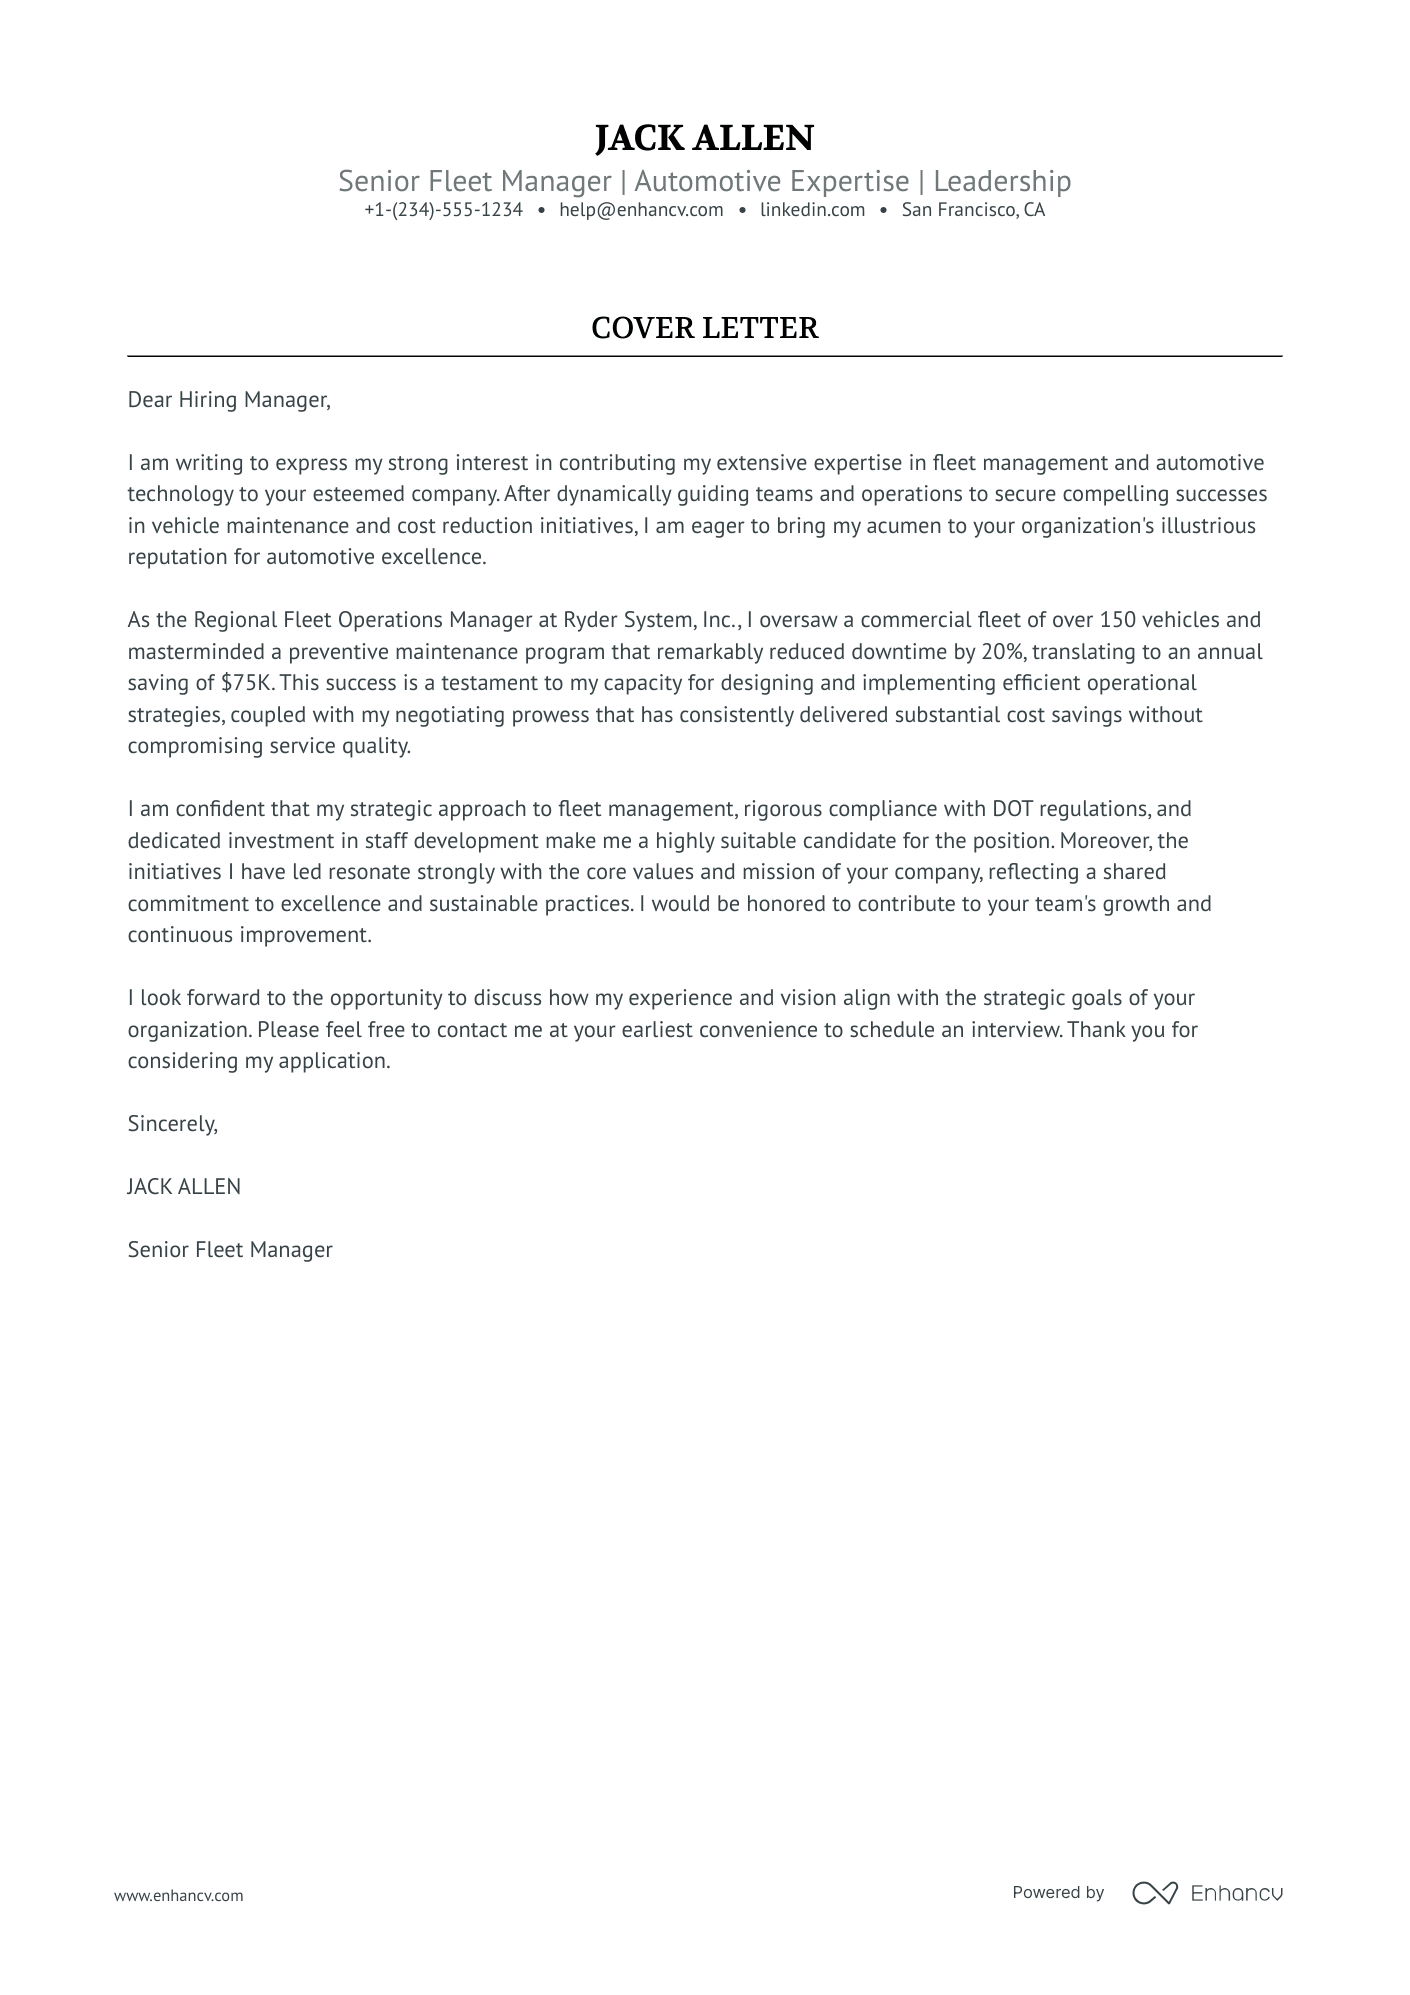 Fleet Manager cover letter